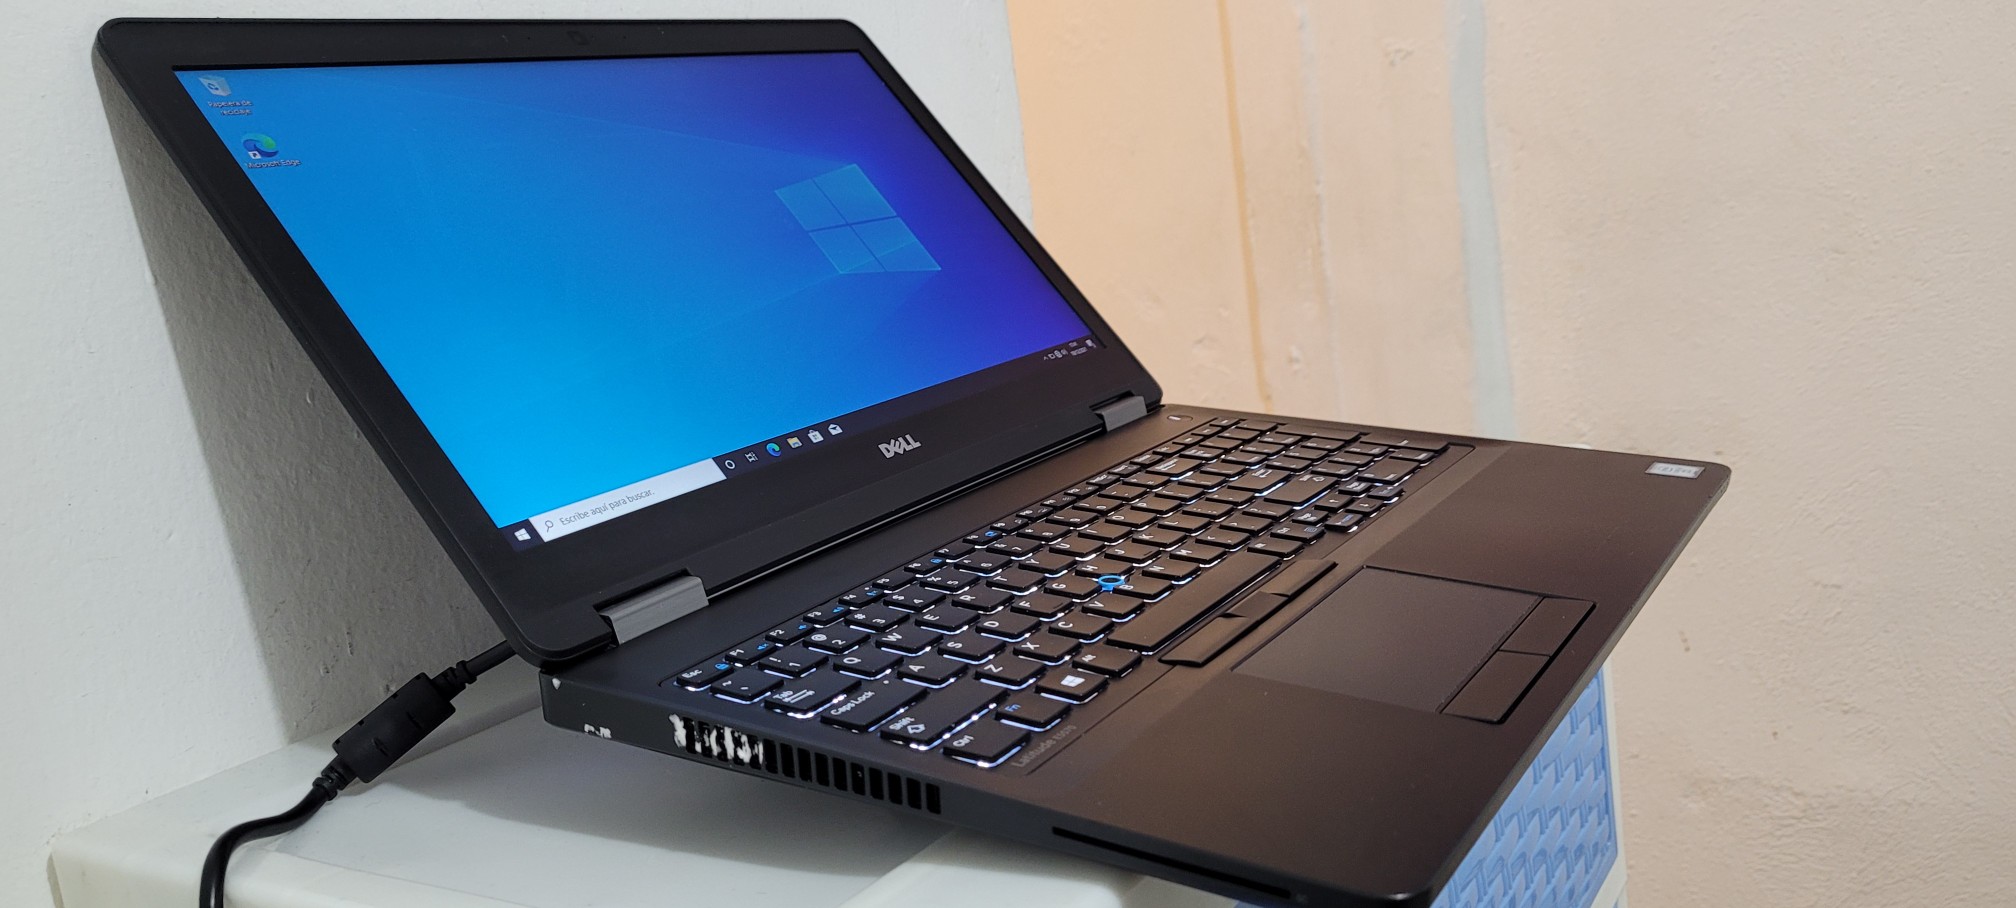 computadoras y laptops - Dell latitude 17 Pulg Core i7 2.6ghz Ram 8gb Disco 1000gb Teclado iluminado 1